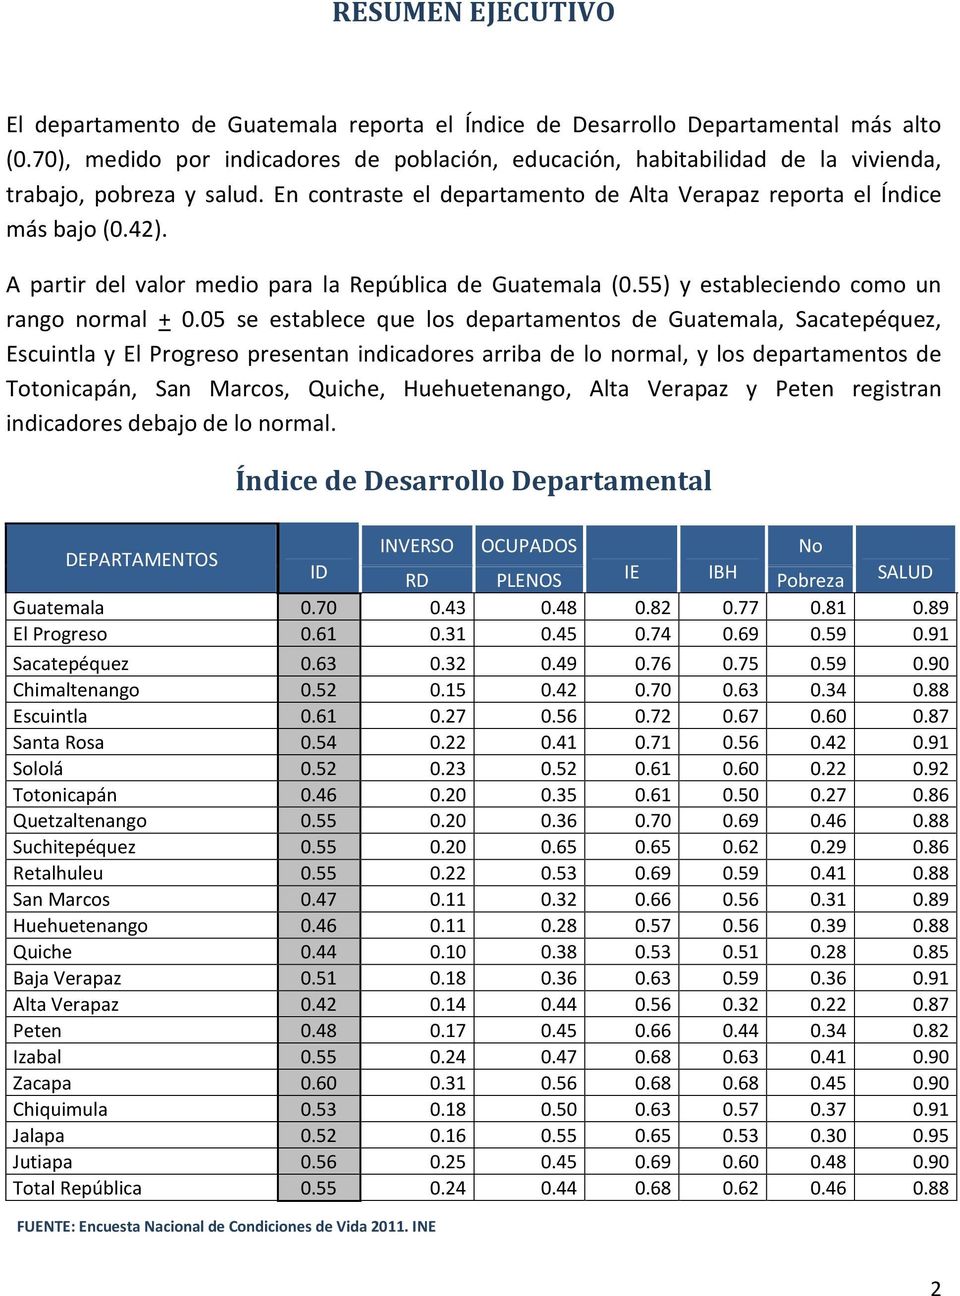 A partir del valor medio para la República de Guatemala (0.55) y estableciendo como un rango normal + 0.